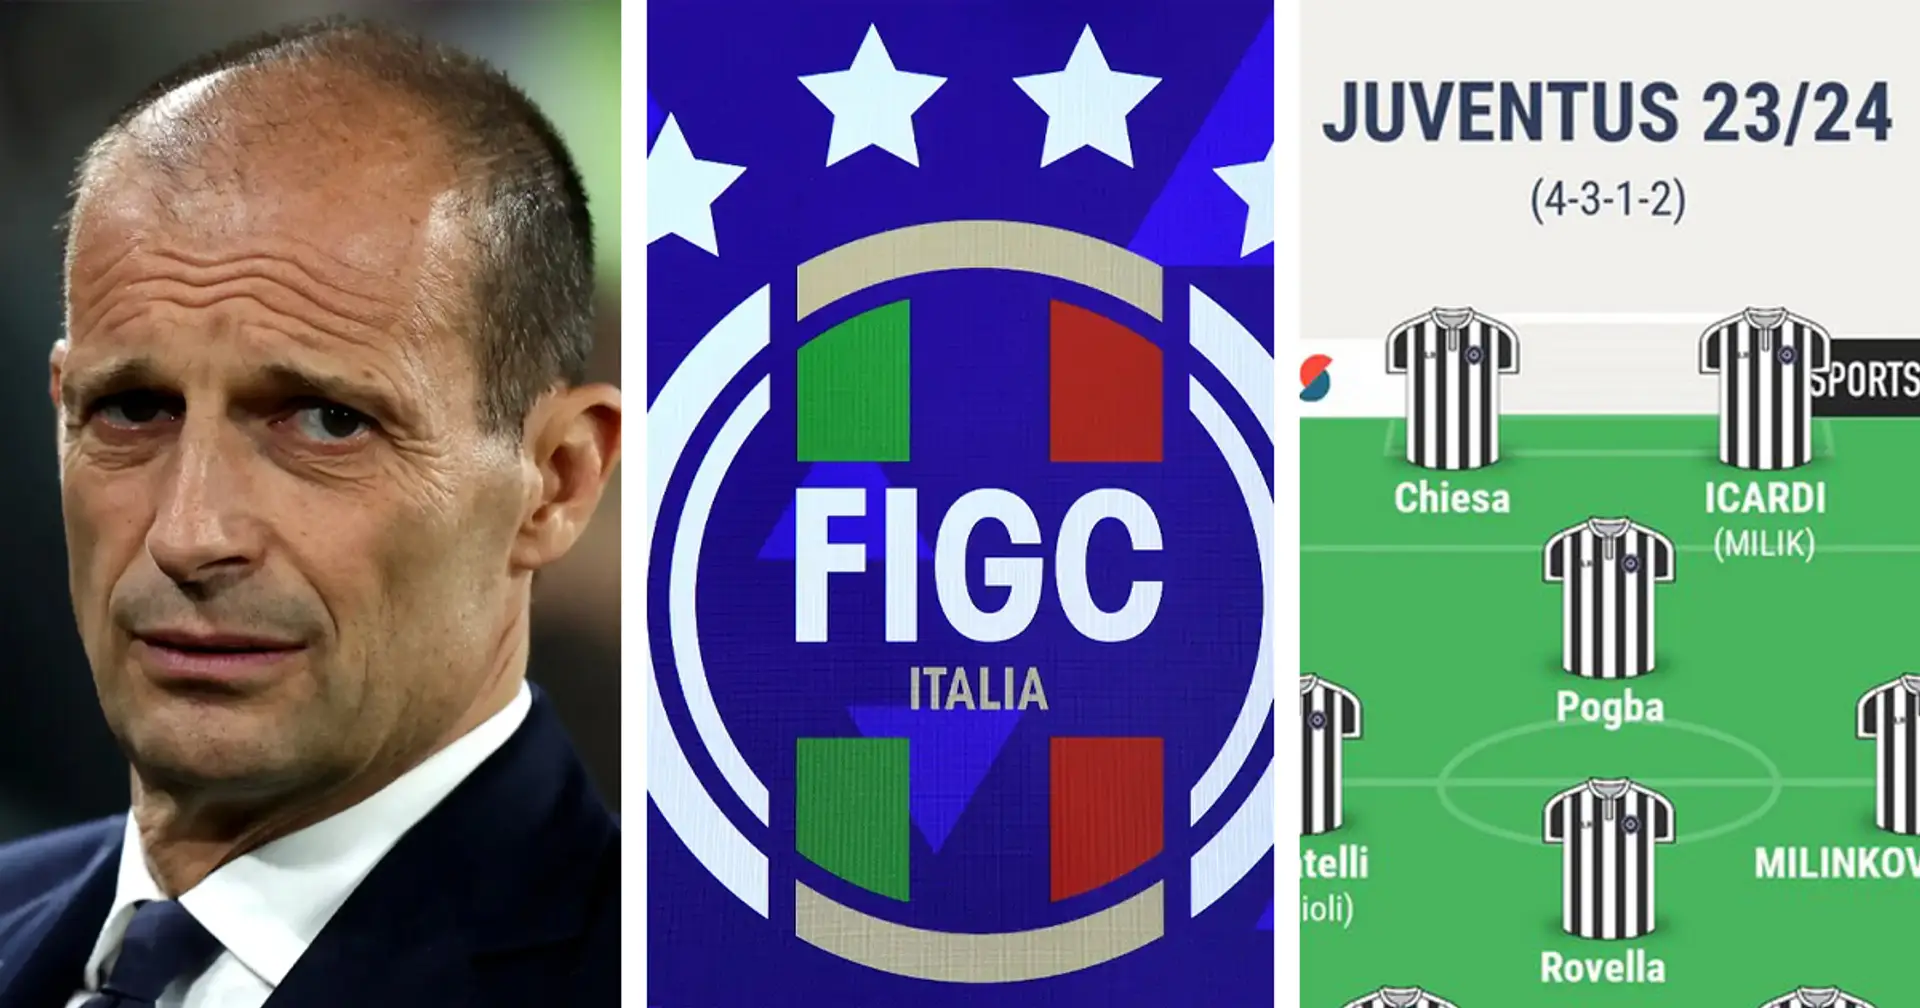 La campagna abbonamenti Flop e altre due storie sulla Juventus che potresti esserti perso